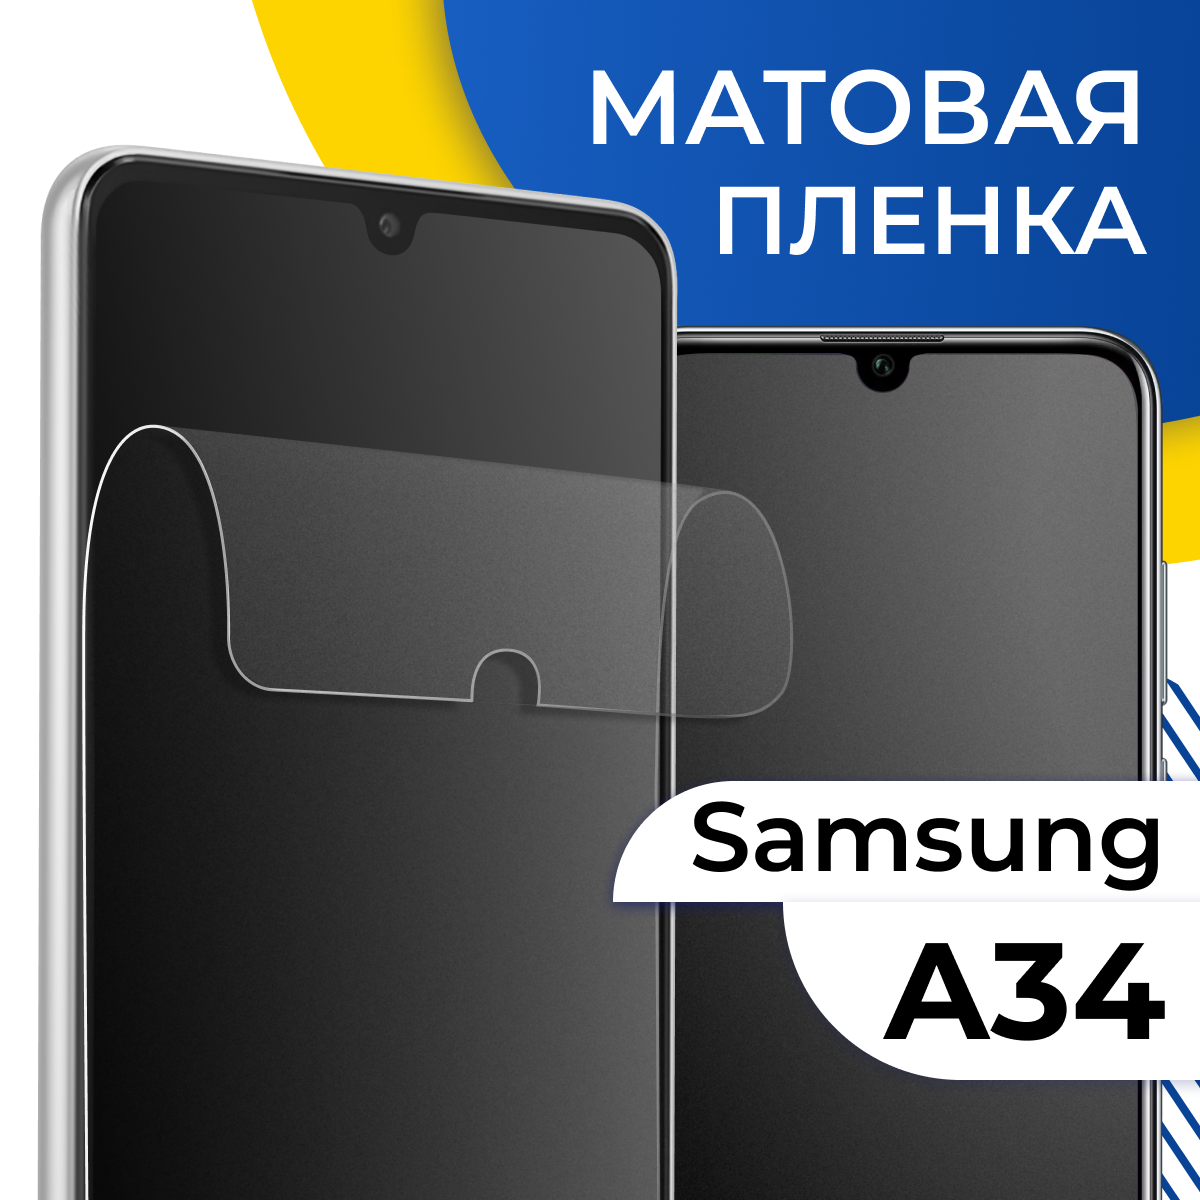 Матовая гидрогелевая пленка для телефона Samsung Galaxy A34 5G / Самовосстанавливающаяся защитная пленка на Самсунг Галакси А34 5Г / Противоударная